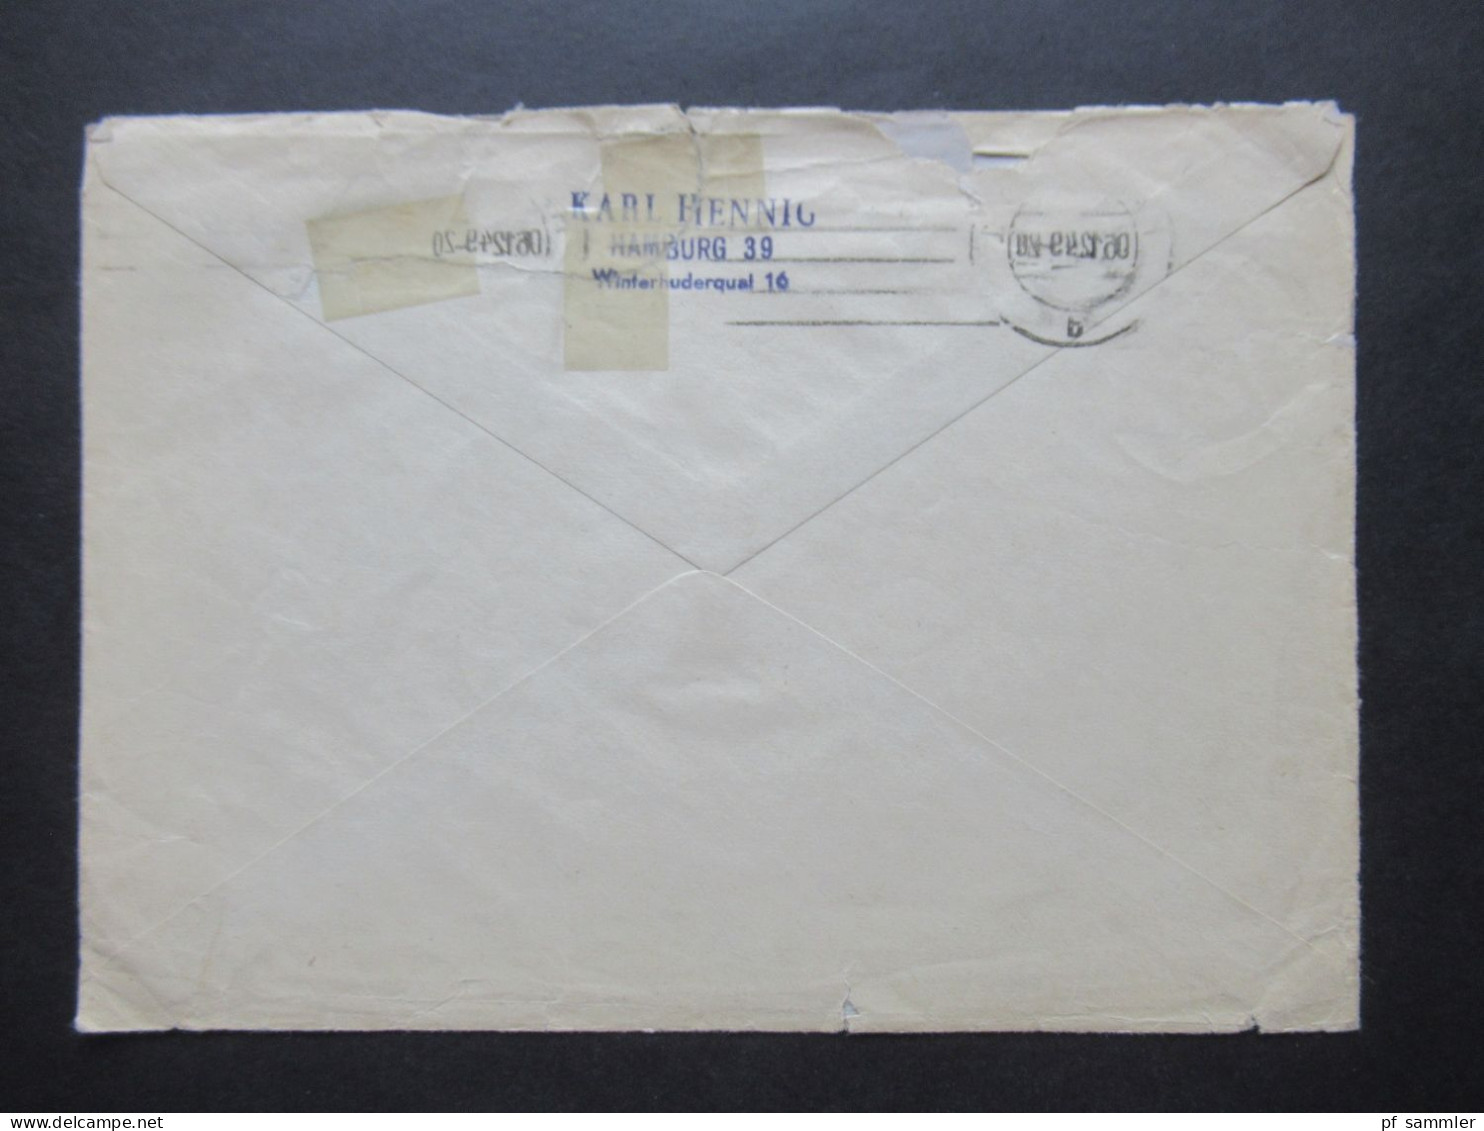 Französische Zone 1949 Baden Nr.53 (3) MeF Conradin Kreutzer Auslandsbrief Verwendung In Hamburg - London (GB) - Baden